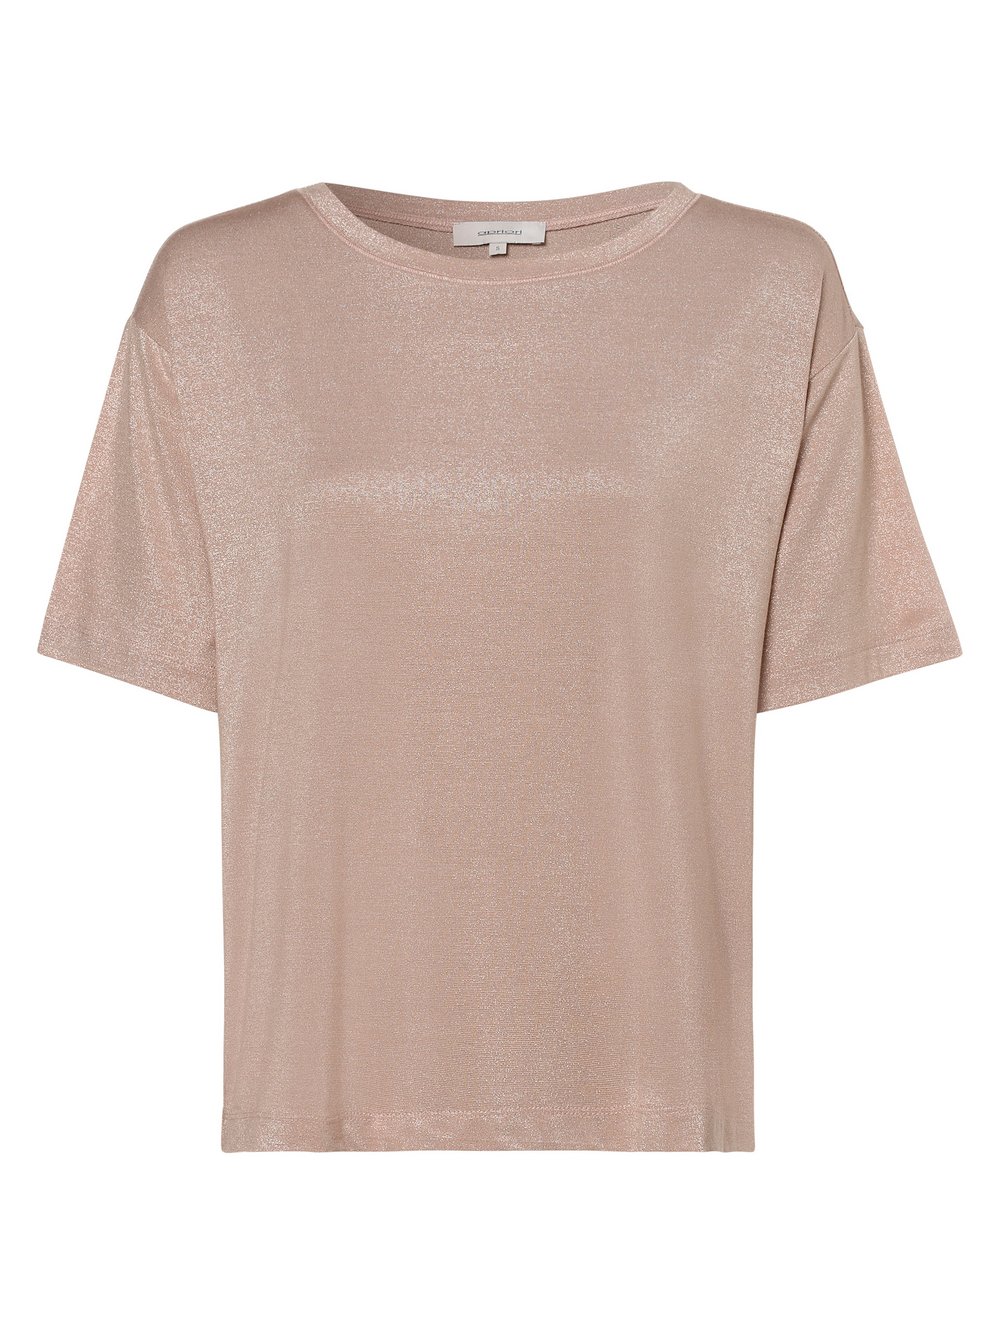 Apriori - T-shirt damski, różowy